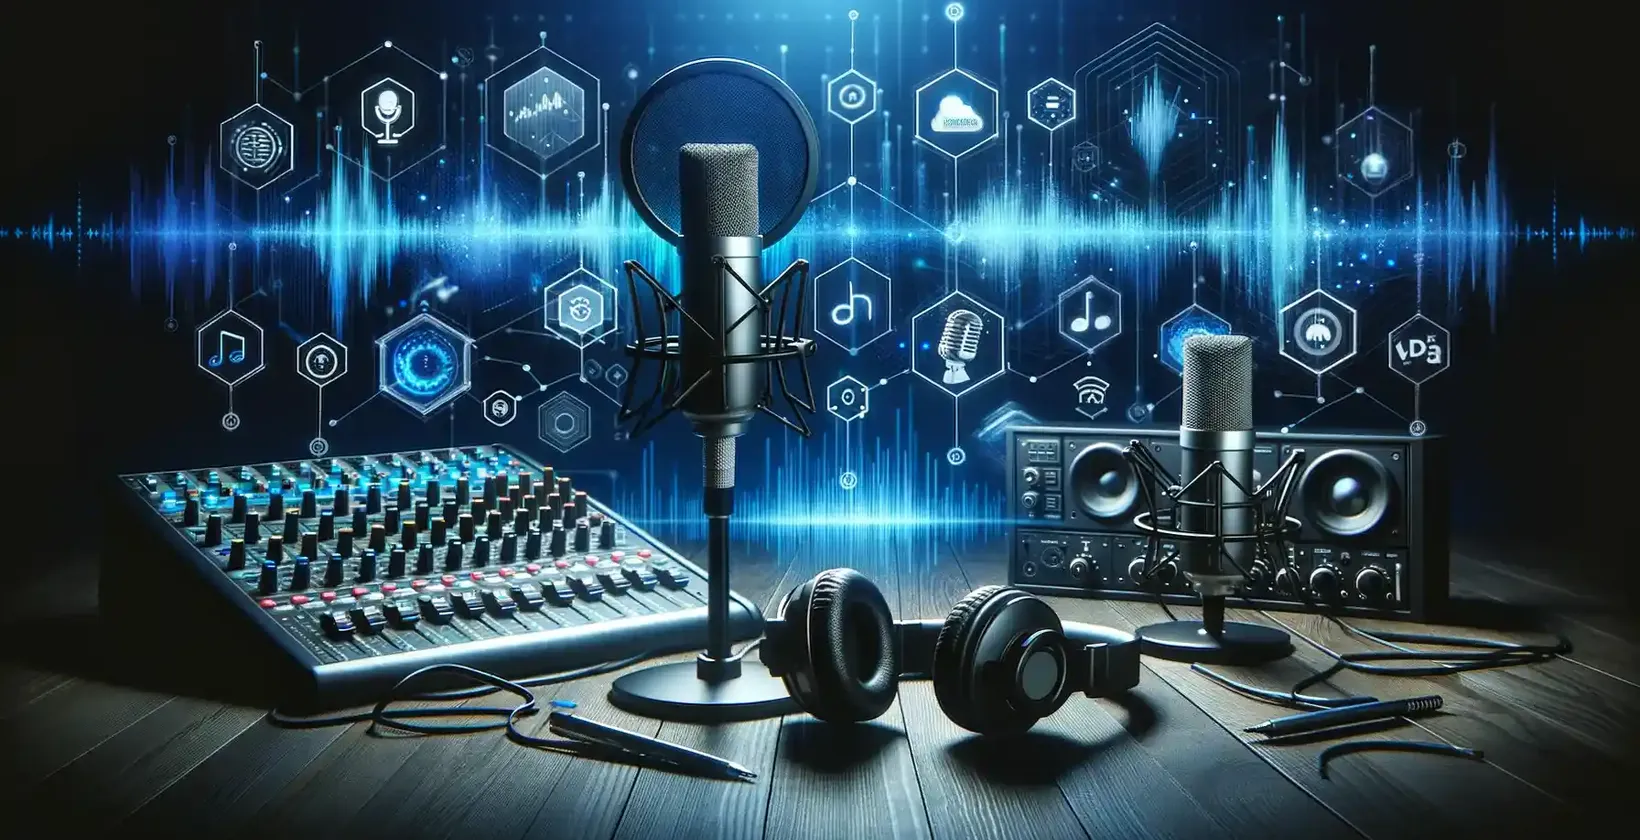 Riktlinjer för transkription av podcasts 2023: Modern podcastutrustning med digitalt gränssnitt mot en mörk bakgrund.